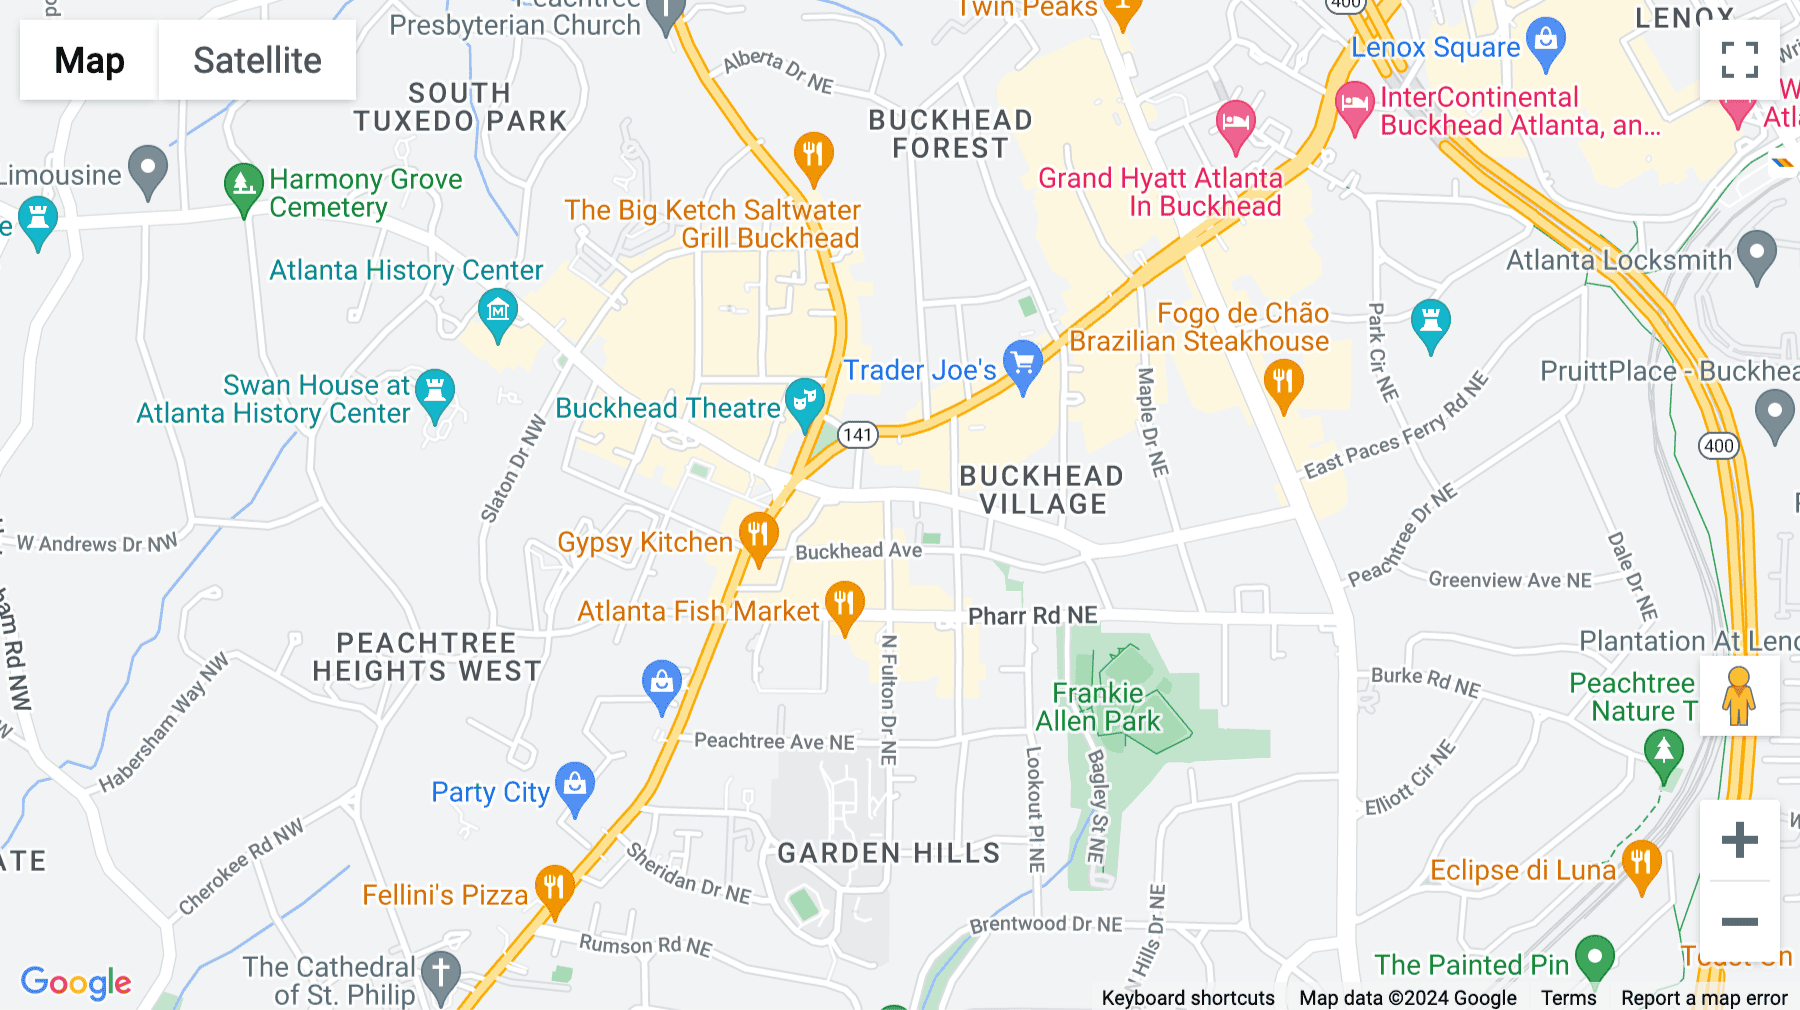 Click for interative map of Buckhead, 309 E Paces Ferry Road NE, Atlanta